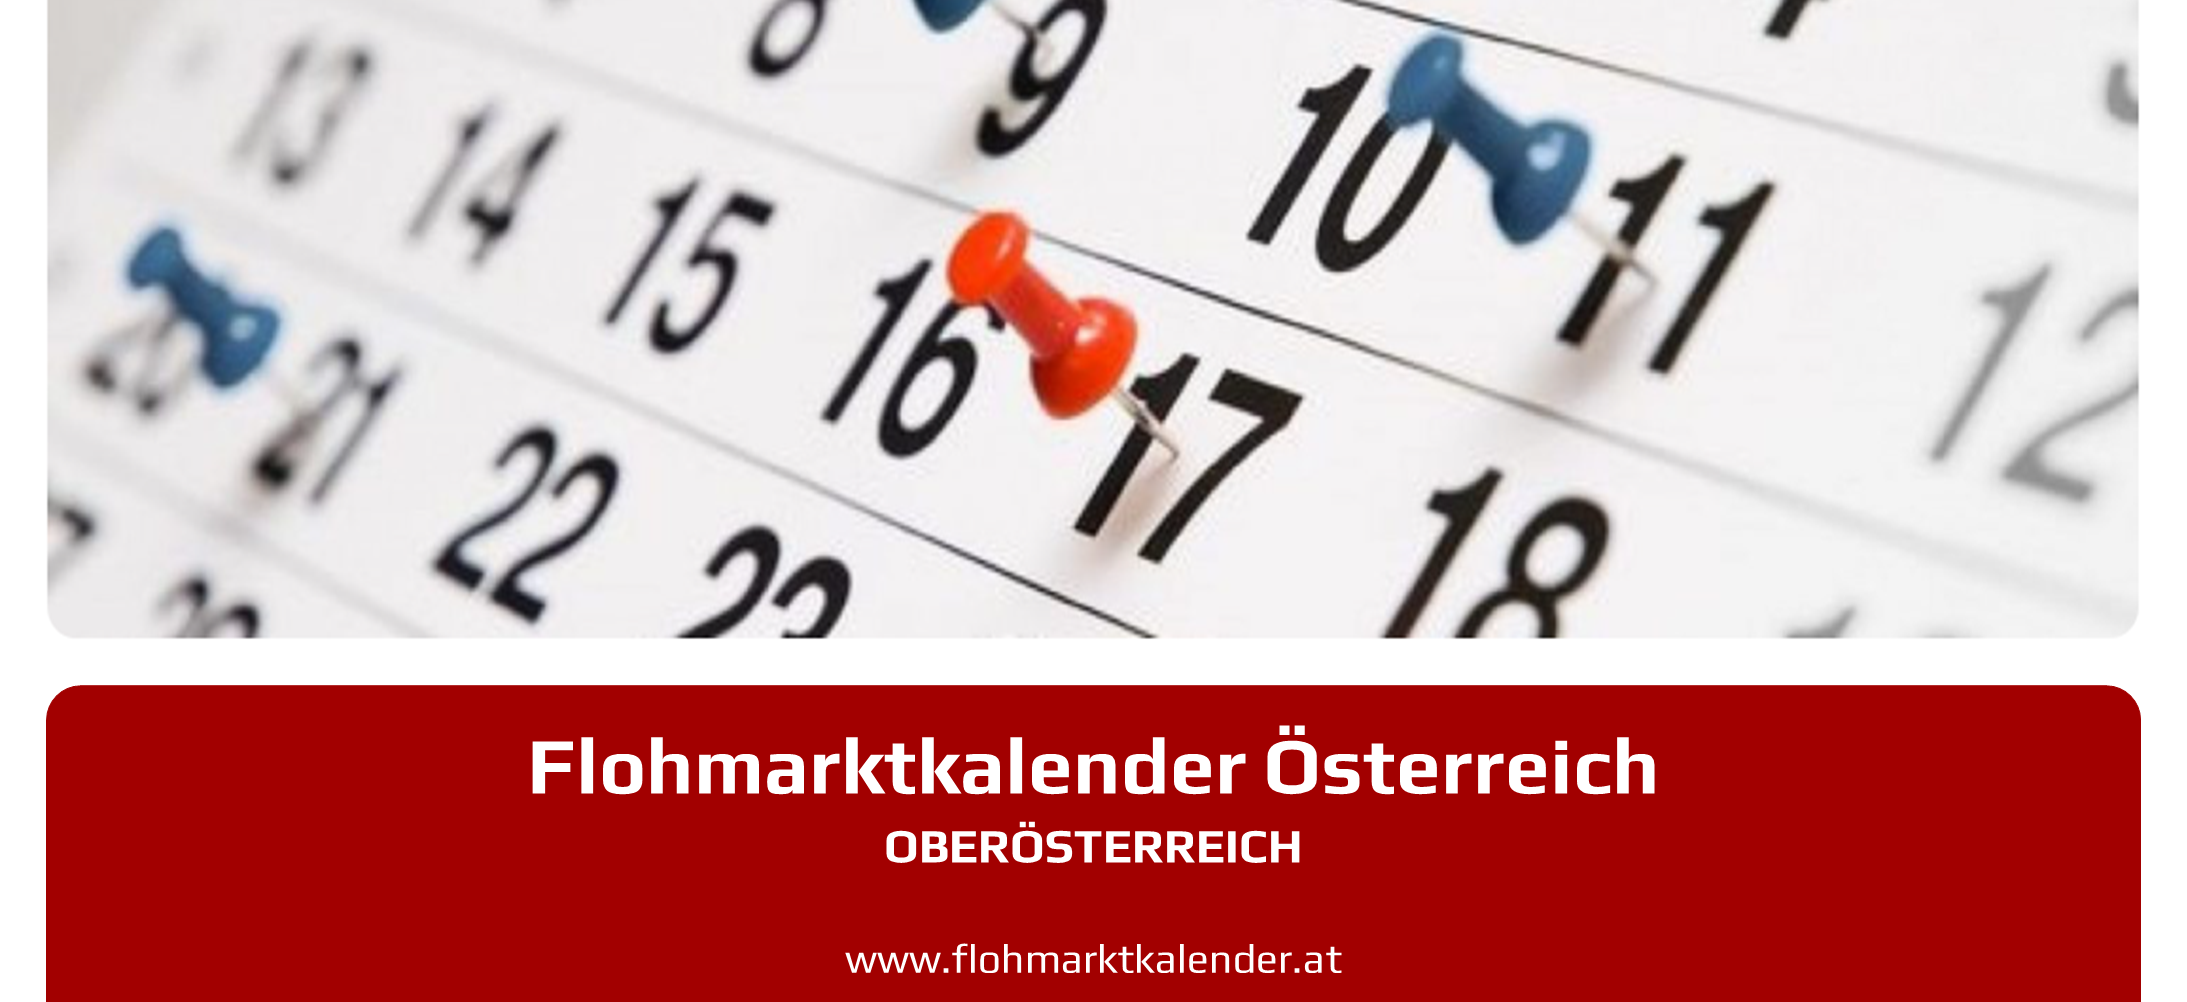 Flohmarktkalender Oberoesterreich 19